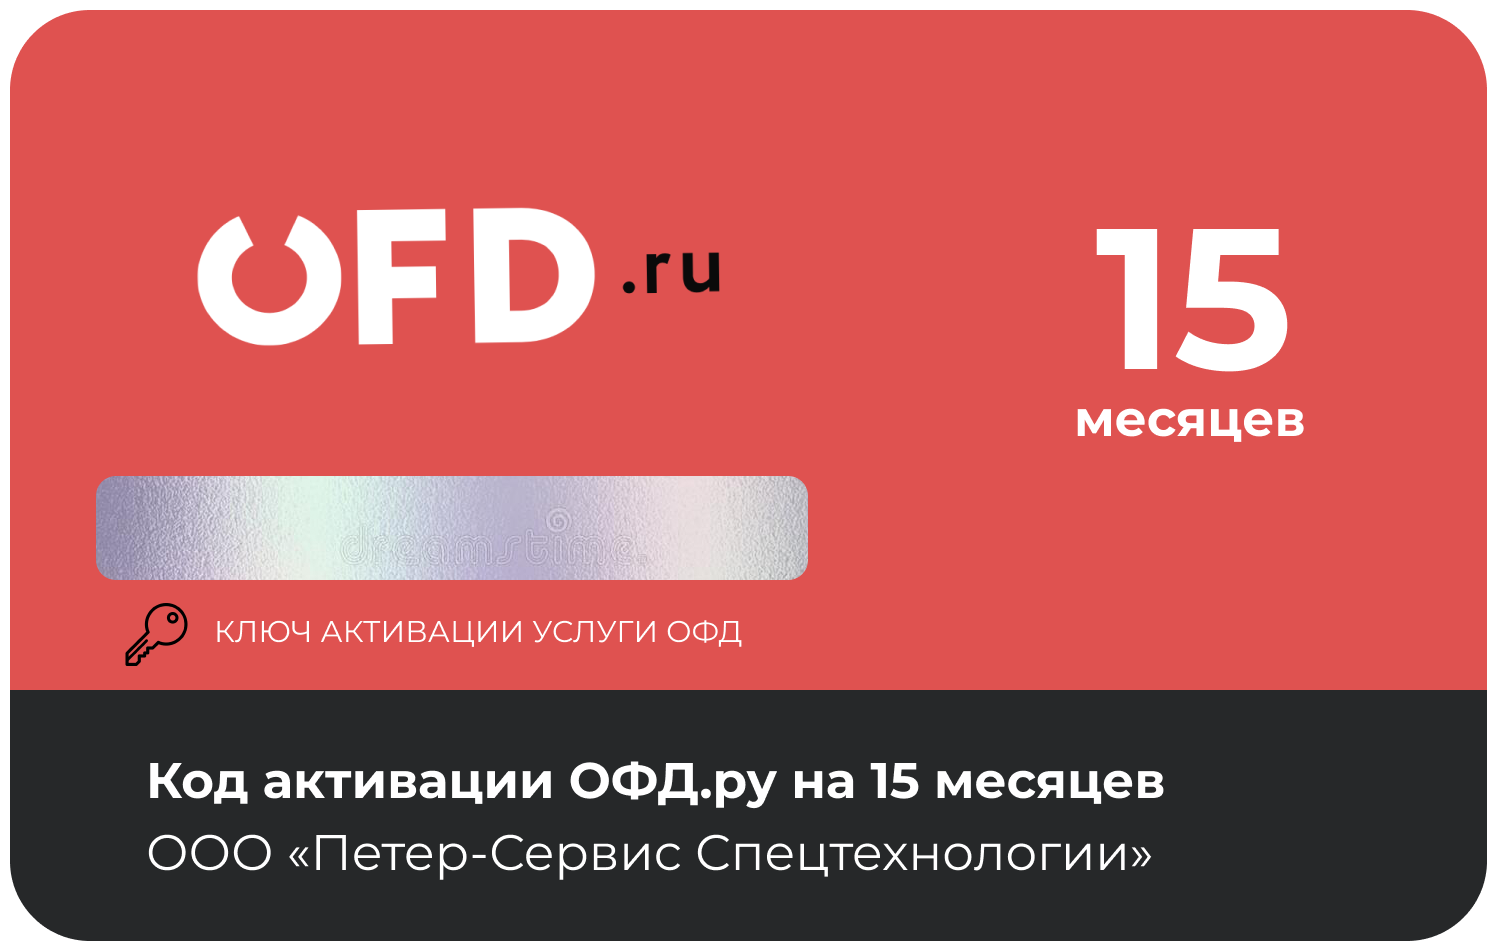 Код активации ОФД от OFD.RU на 15 месяцев